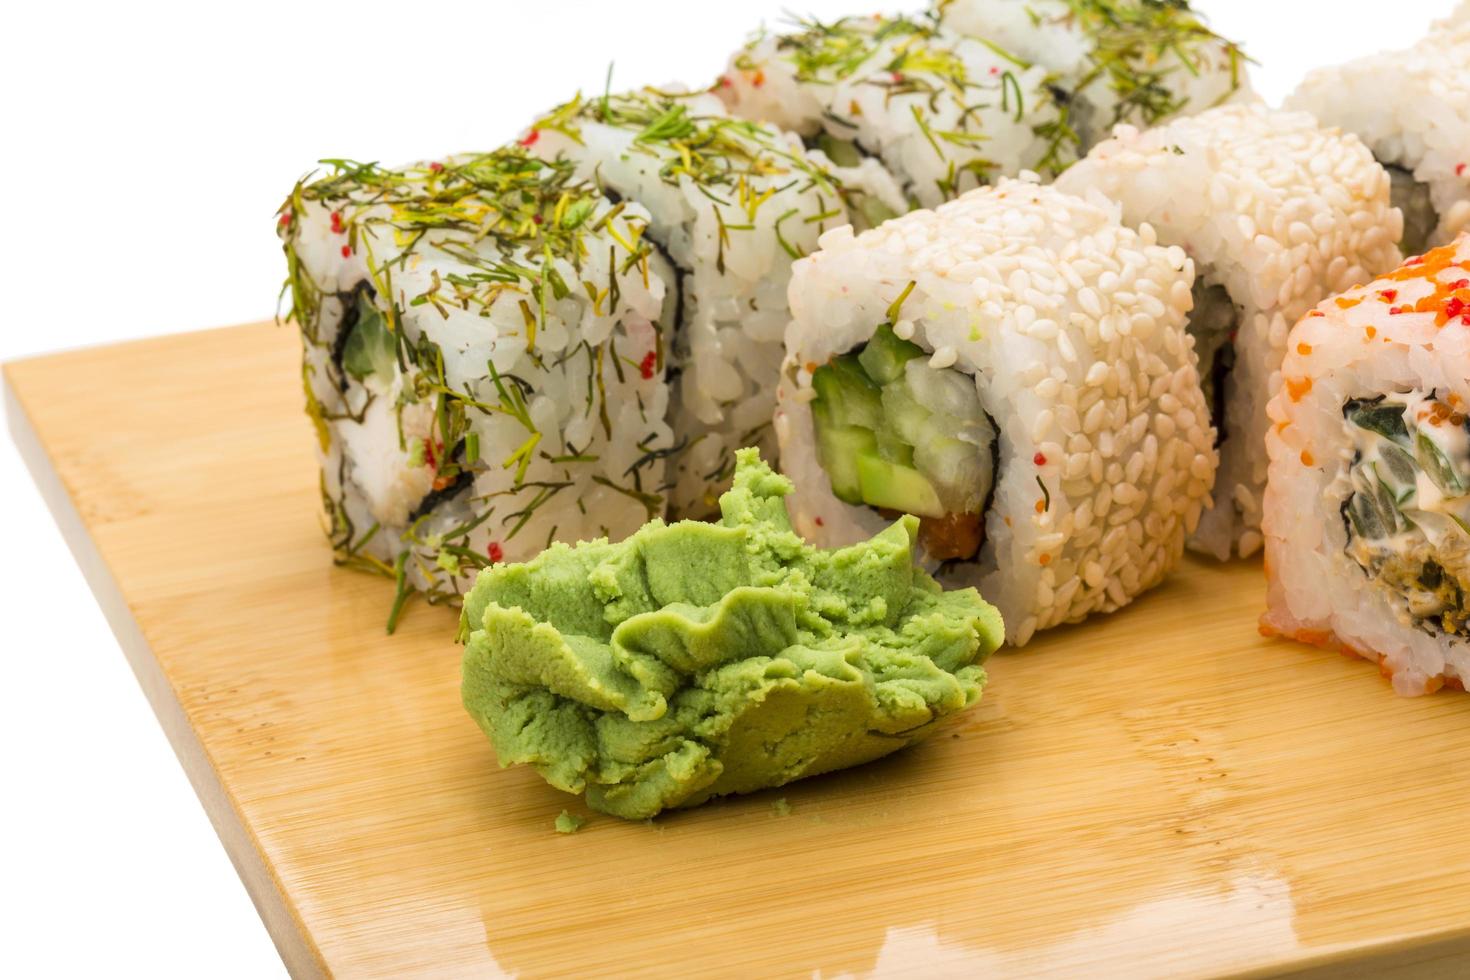 Japan sushi set photo